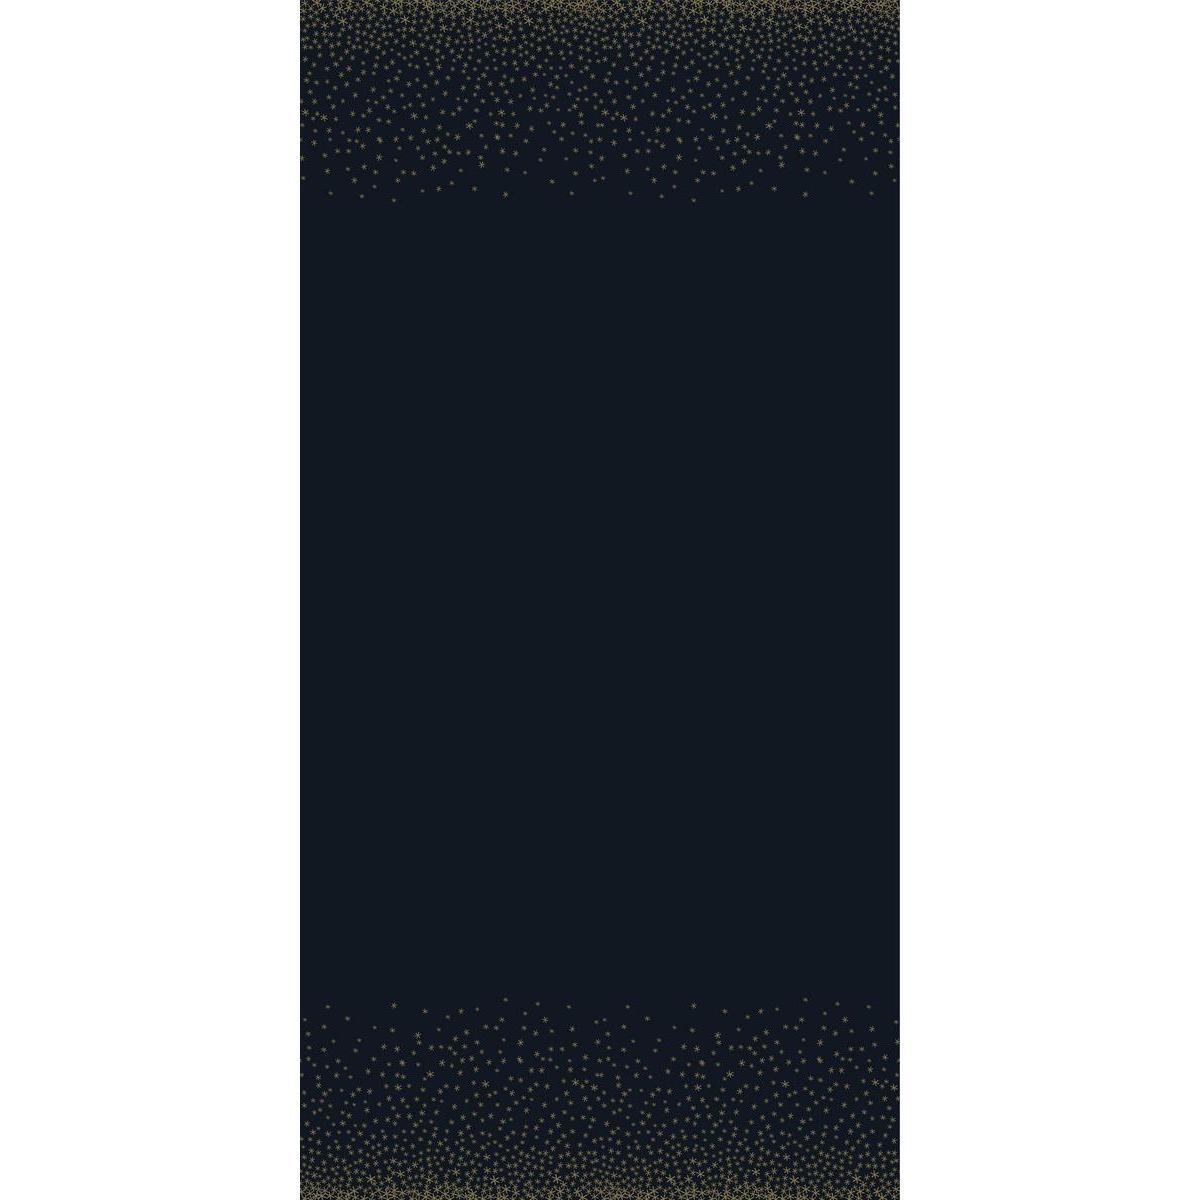 Rouleau nappe pailletée - Papier damassé - 6 x 1,18 m - Noir et doré